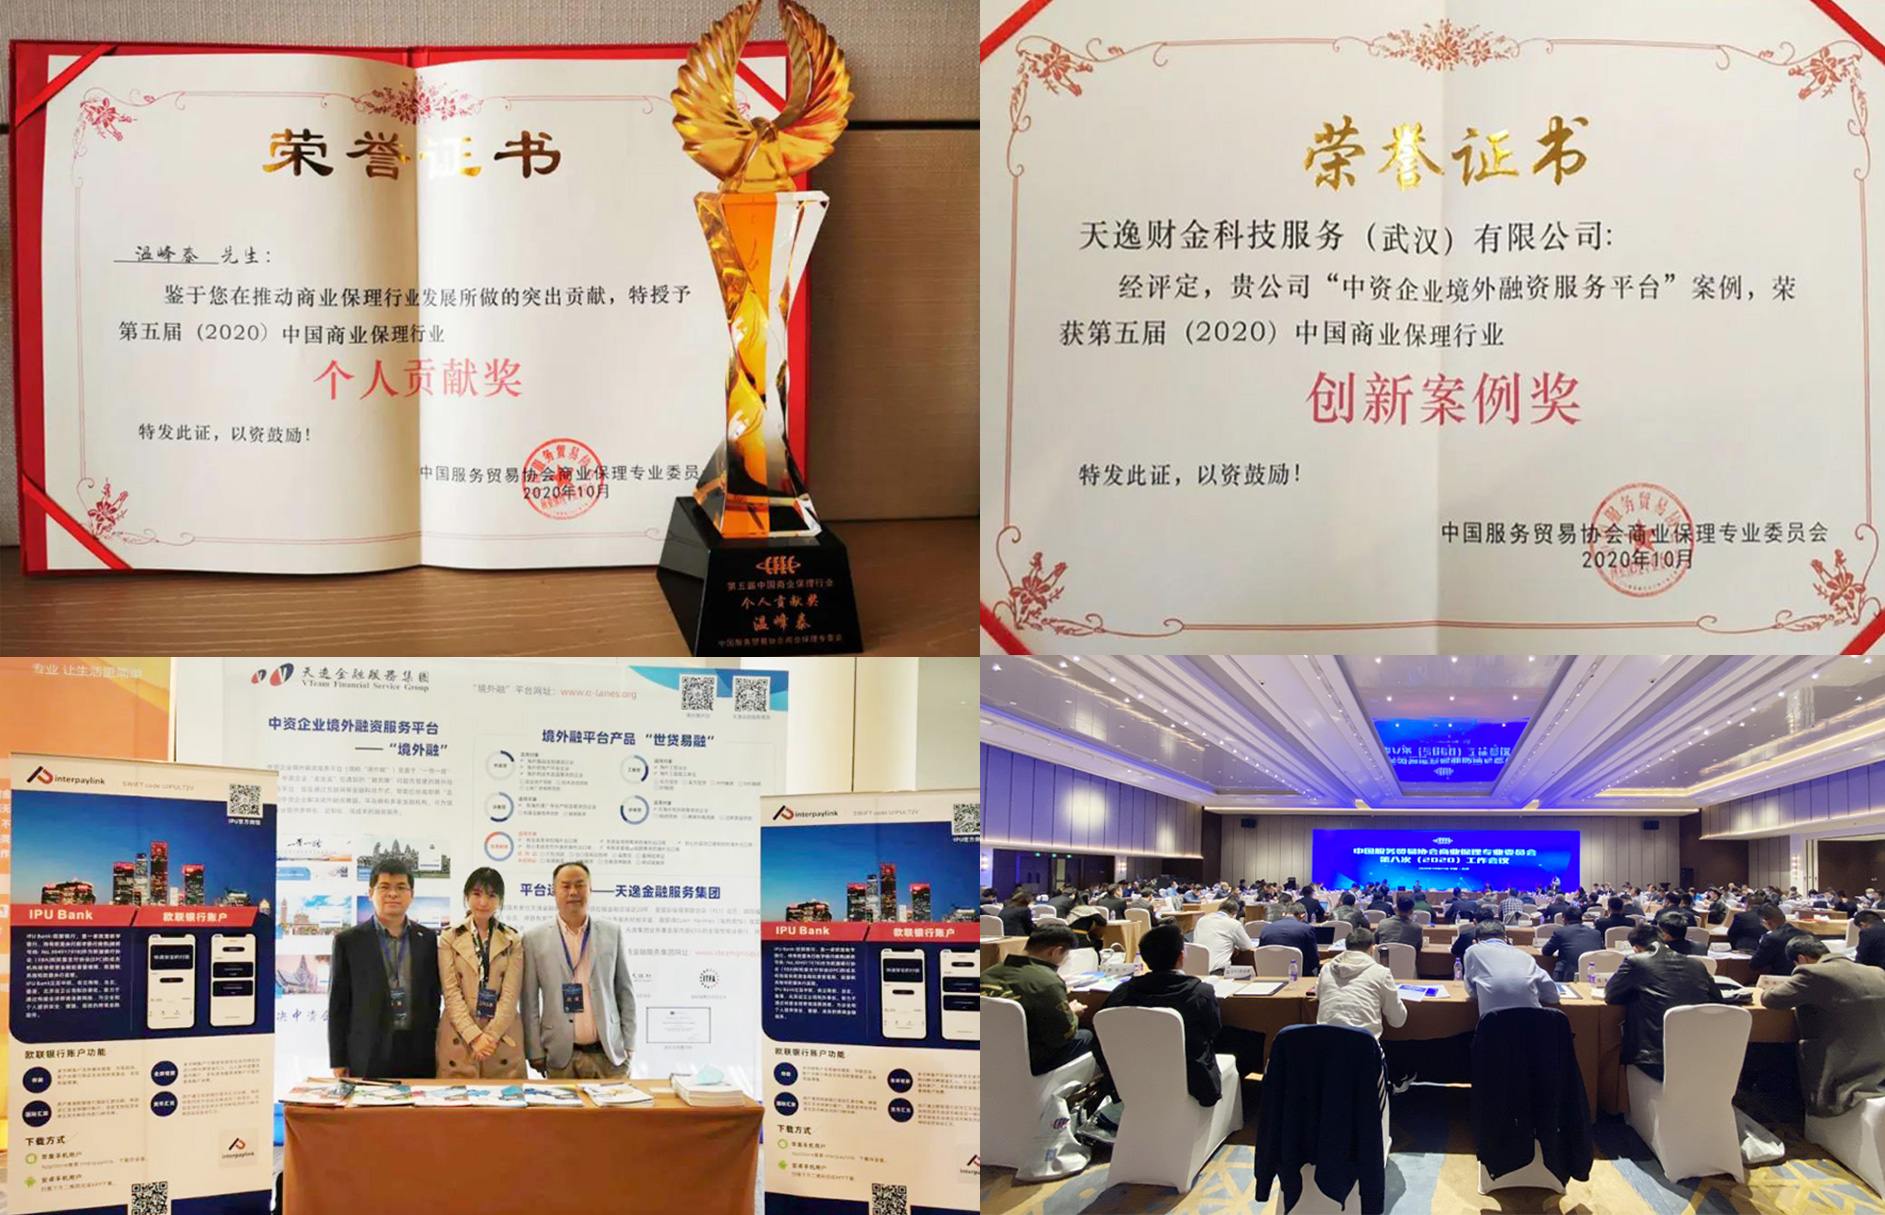 天逸金融服務集團榮獲第五屆中國商業保理行業峰會頒發雙獎肯定